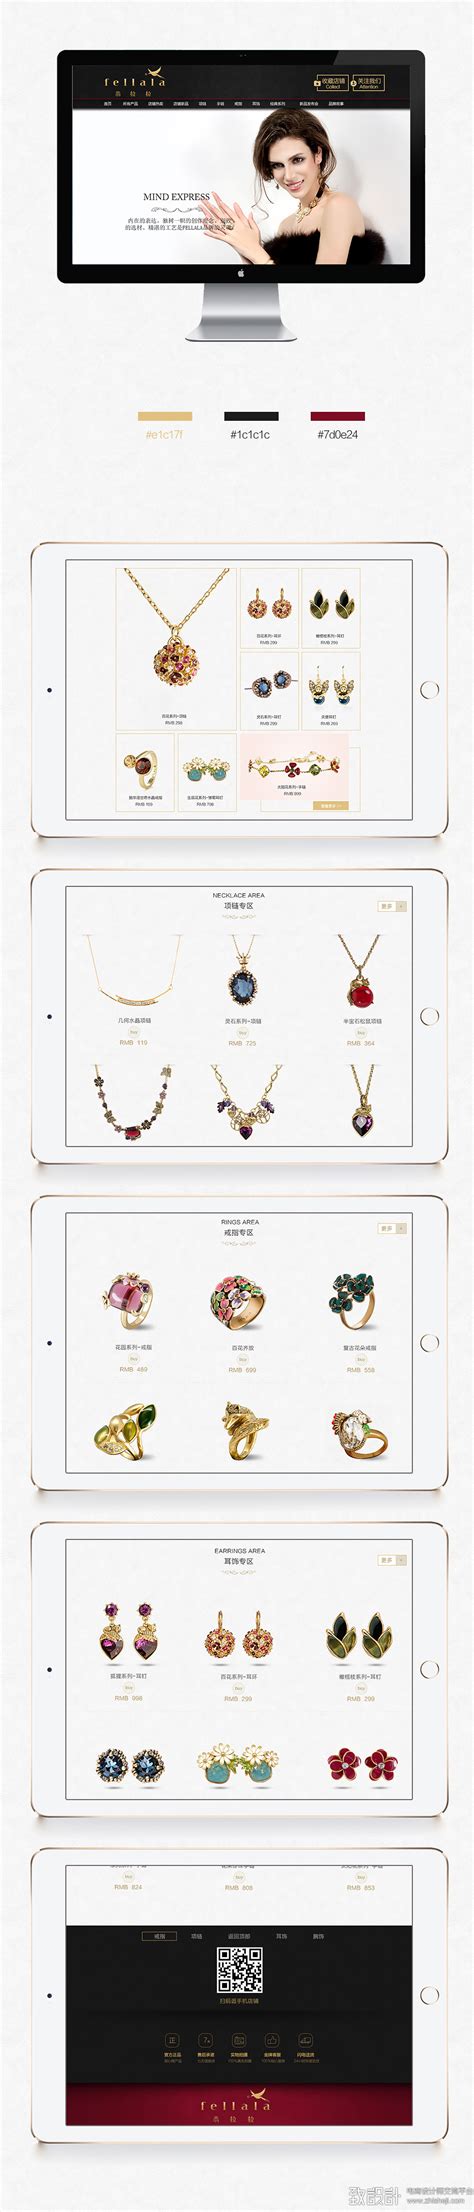 创建珠宝饰品条码、品牌等资料，上传饰品图片及设定分类 - 珠宝销售软件功能特性